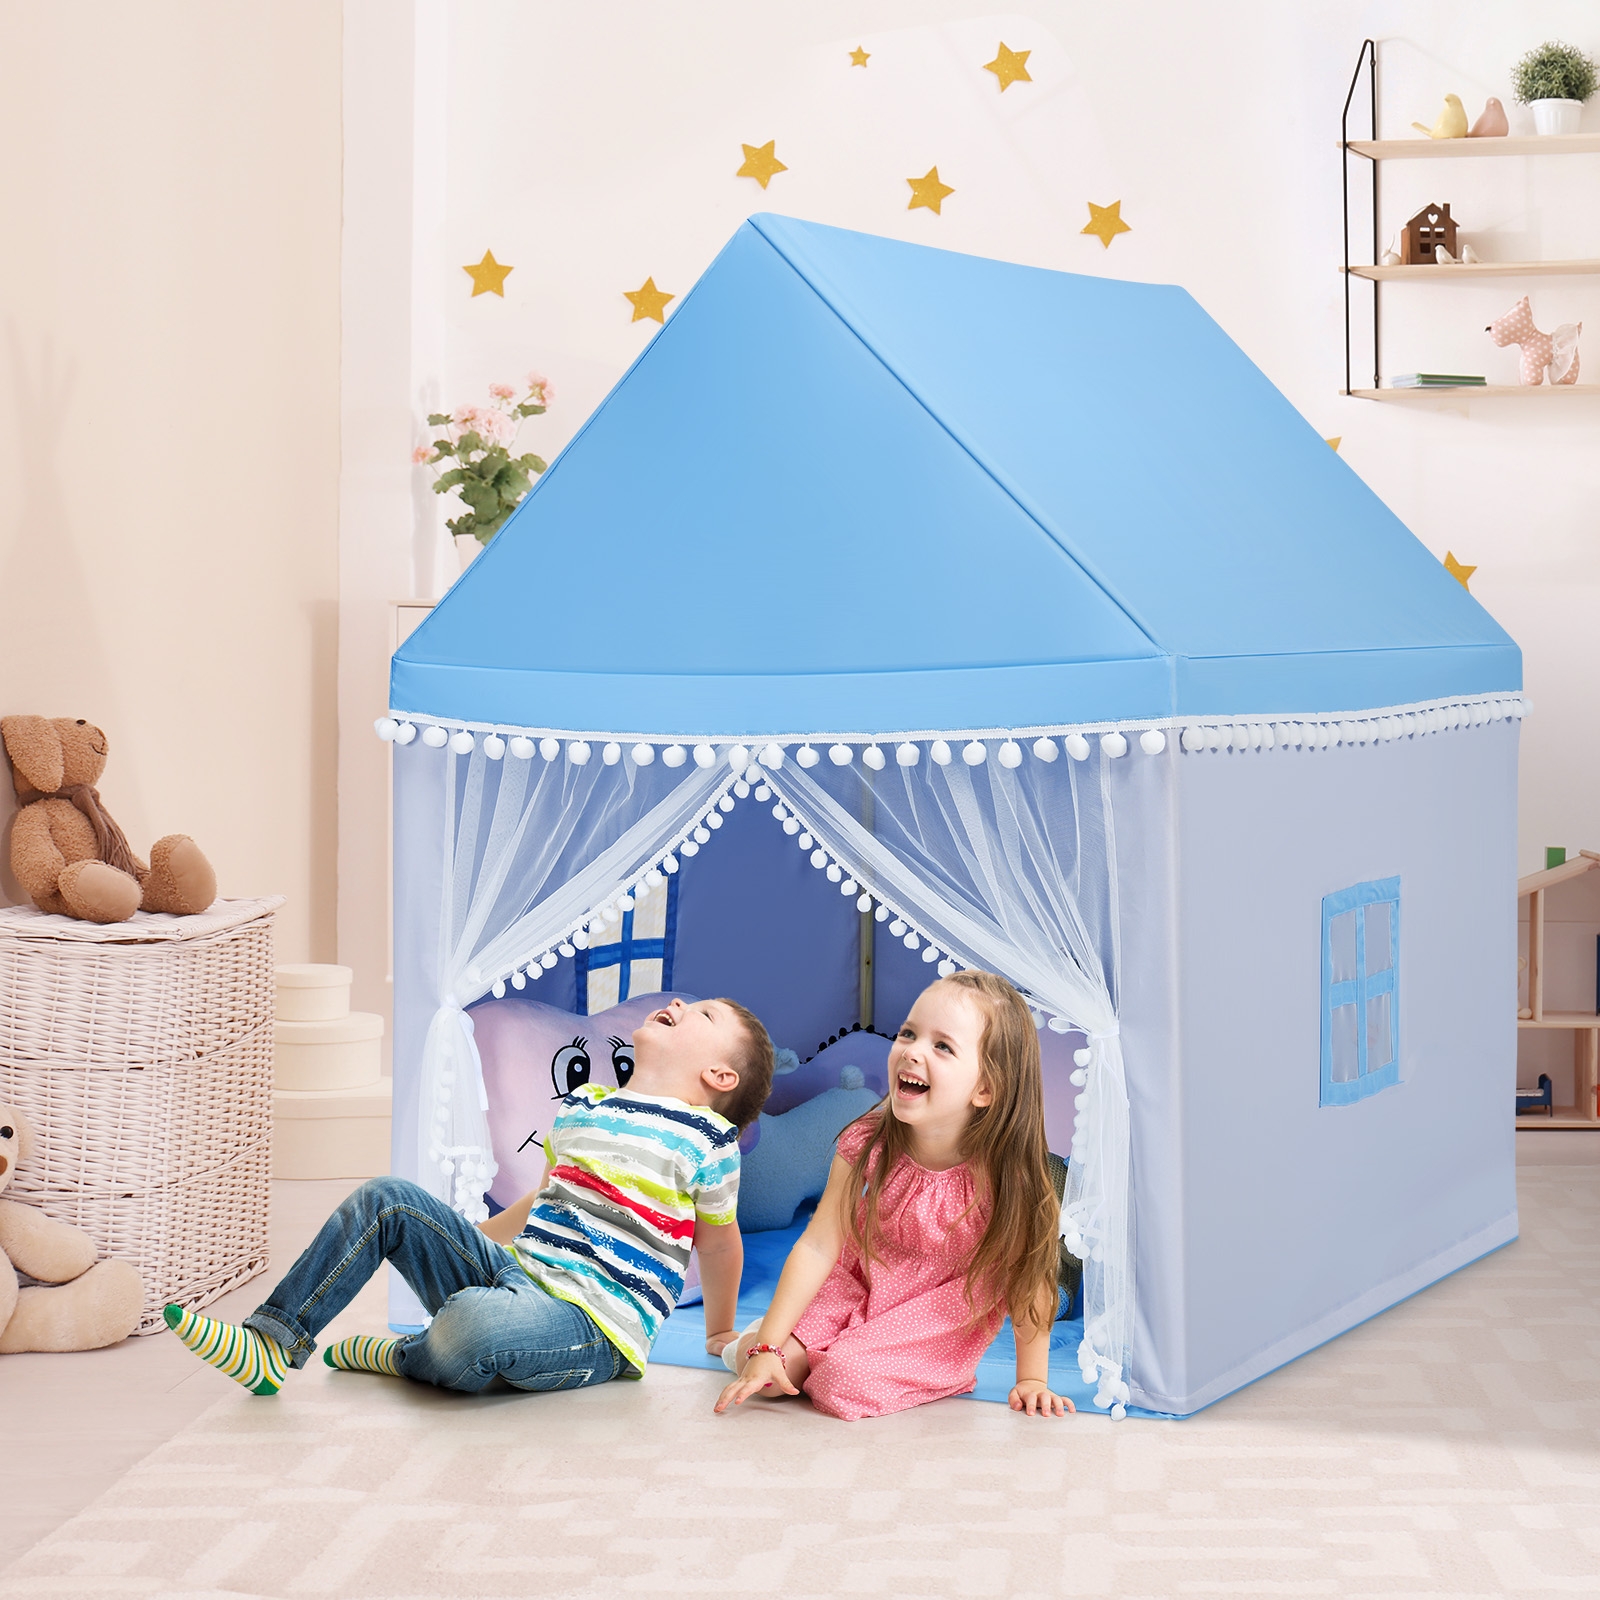 Costway Casetta giocattolo per bambini, Casa grande e resistente con solida struttura di legn Azzurro